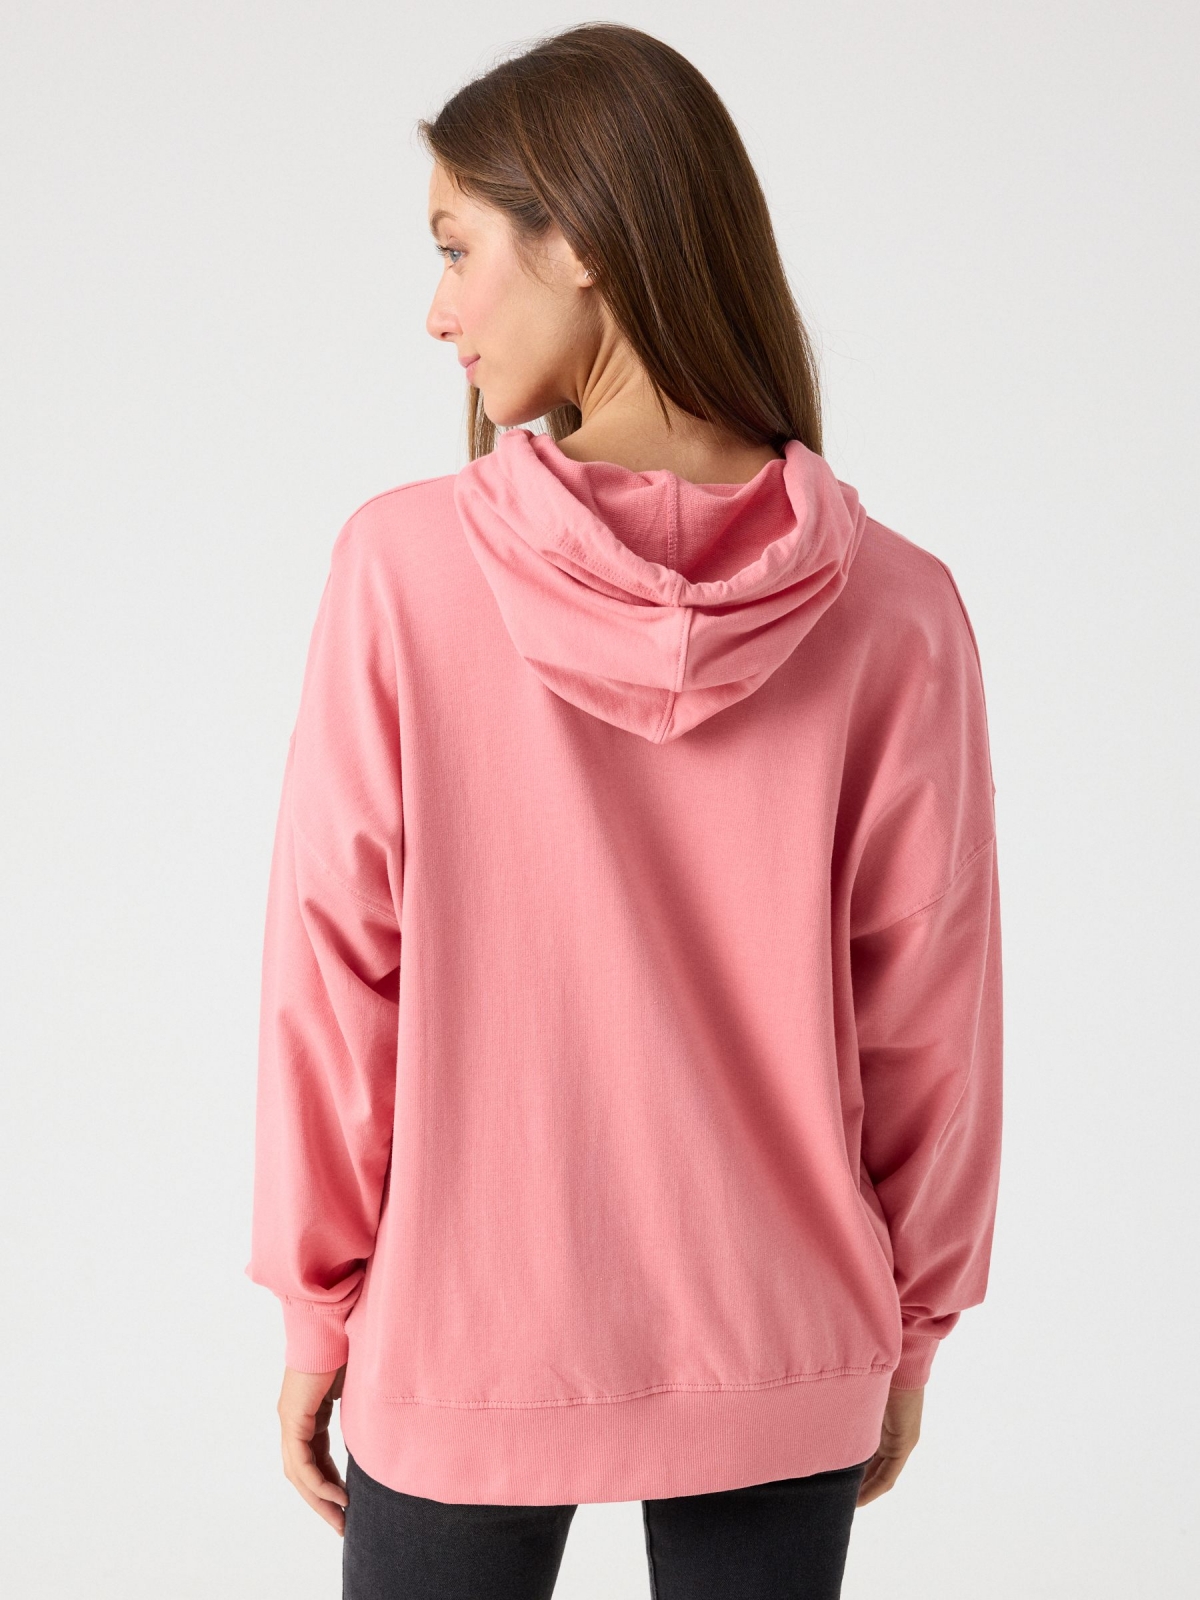 Sudadera básica capucha rosa claro vista media trasera